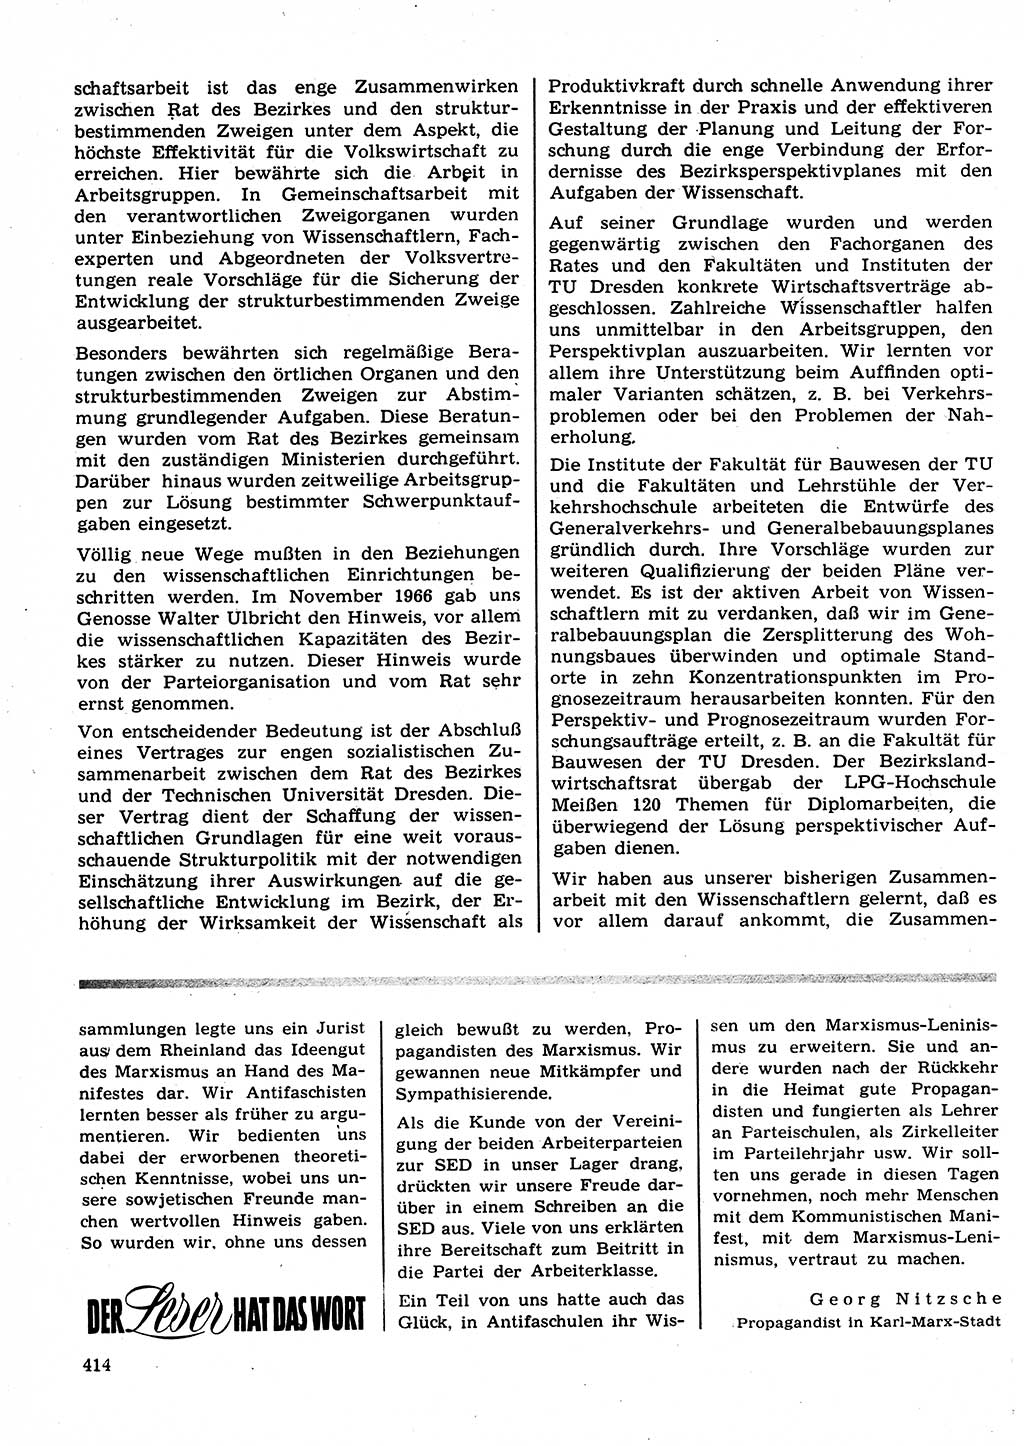 Neuer Weg (NW), Organ des Zentralkomitees (ZK) der SED (Sozialistische Einheitspartei Deutschlands) für Fragen des Parteilebens, 23. Jahrgang [Deutsche Demokratische Republik (DDR)] 1968, Seite 414 (NW ZK SED DDR 1968, S. 414)